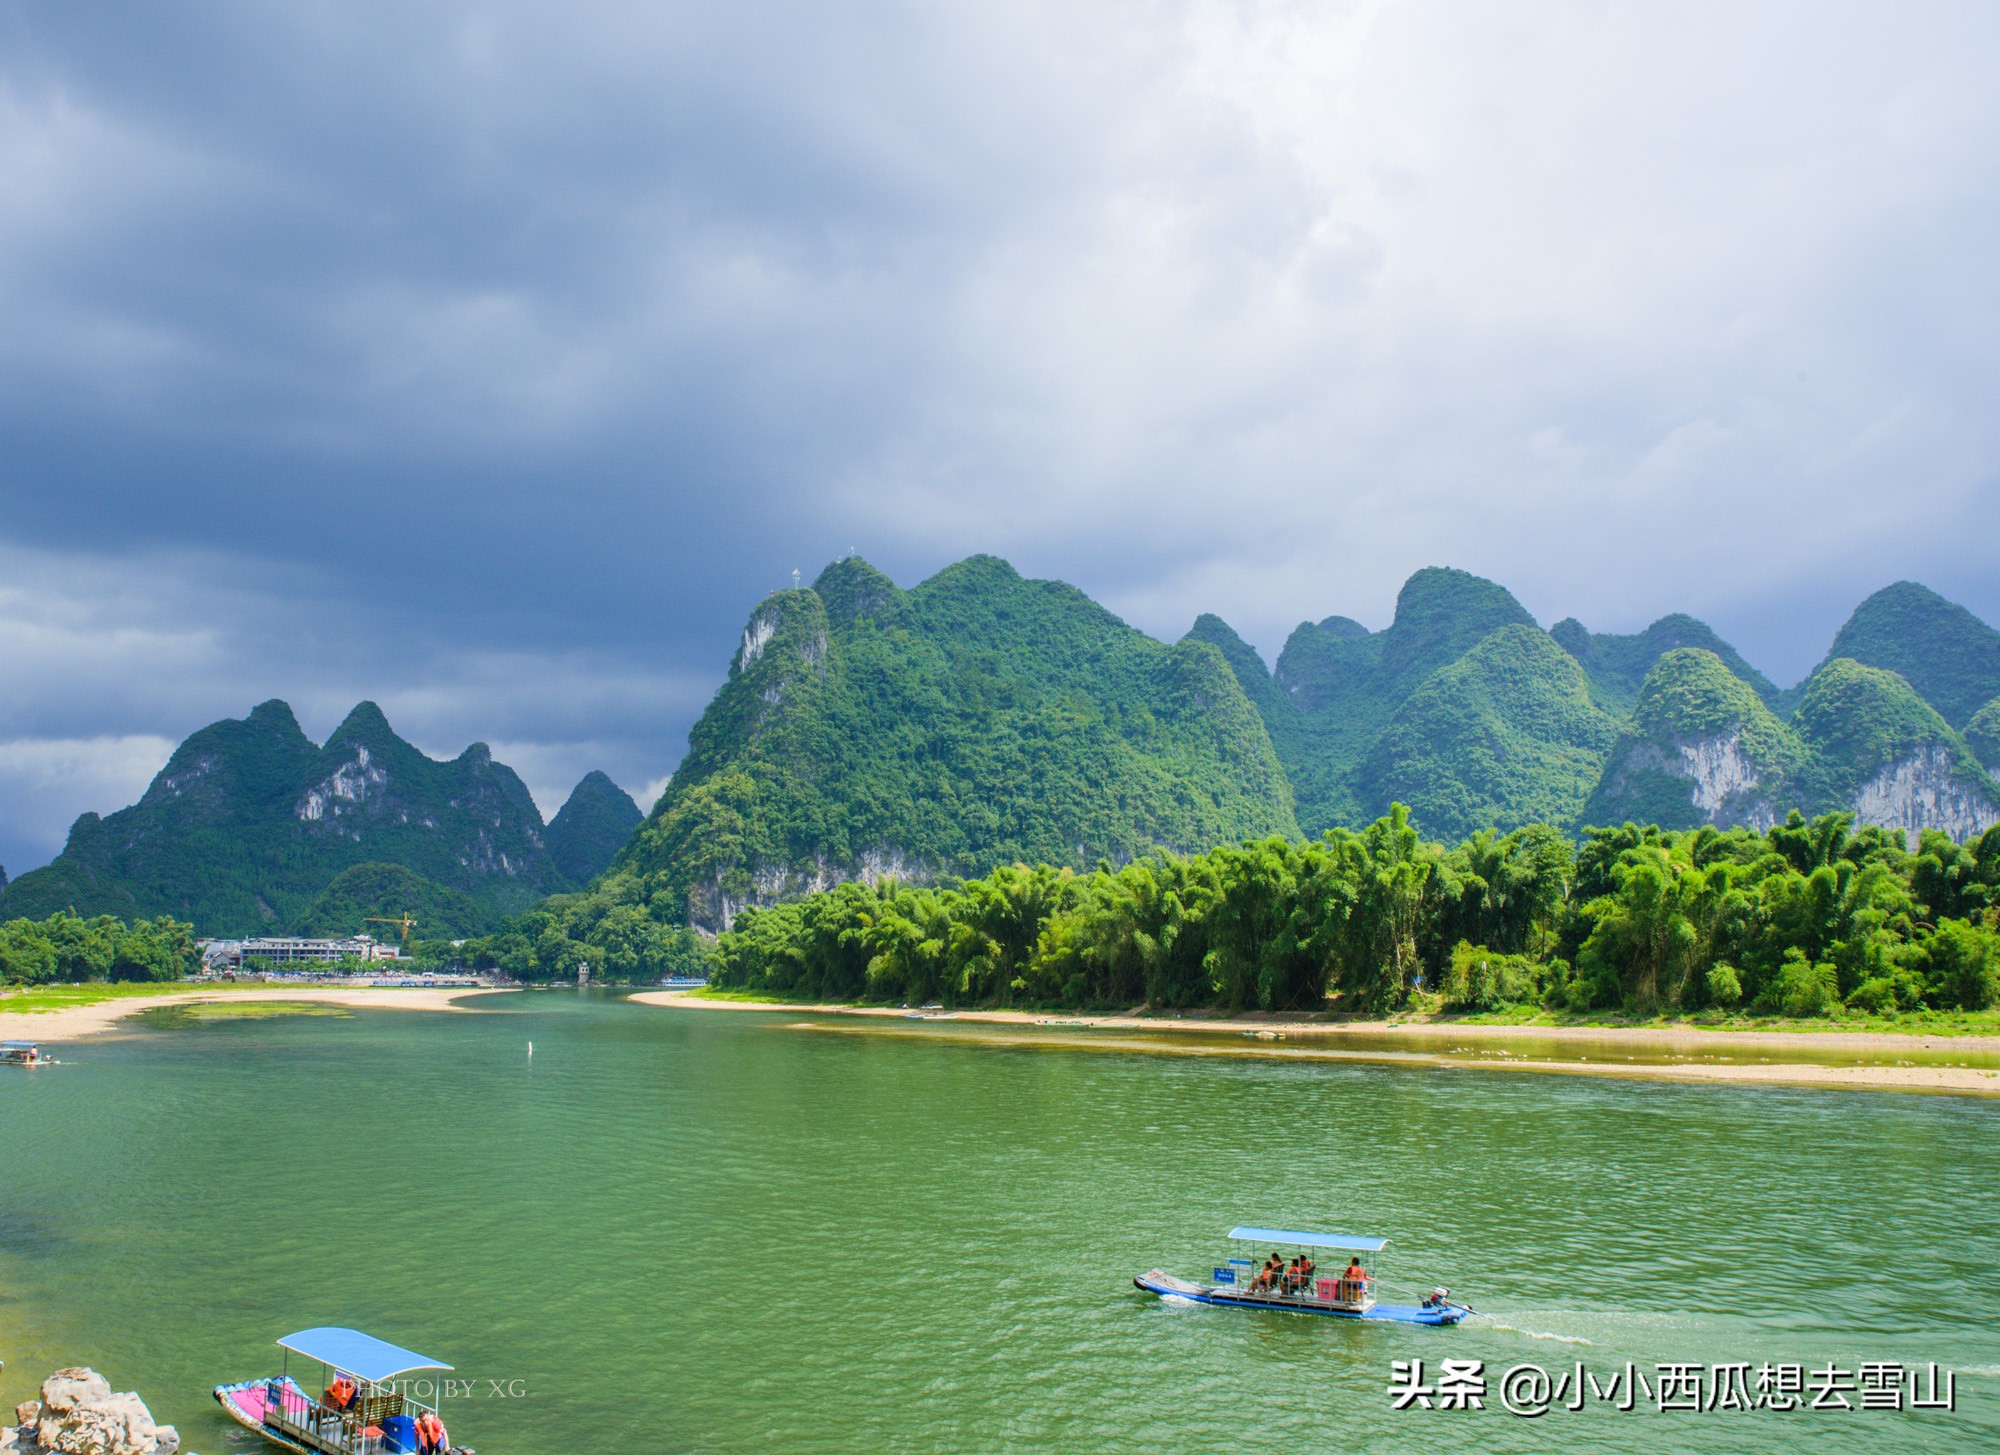 桂林山水风景精华部分(桂林山水真正的精髓，也是世界上规模最大、风景最美的岩溶山水)